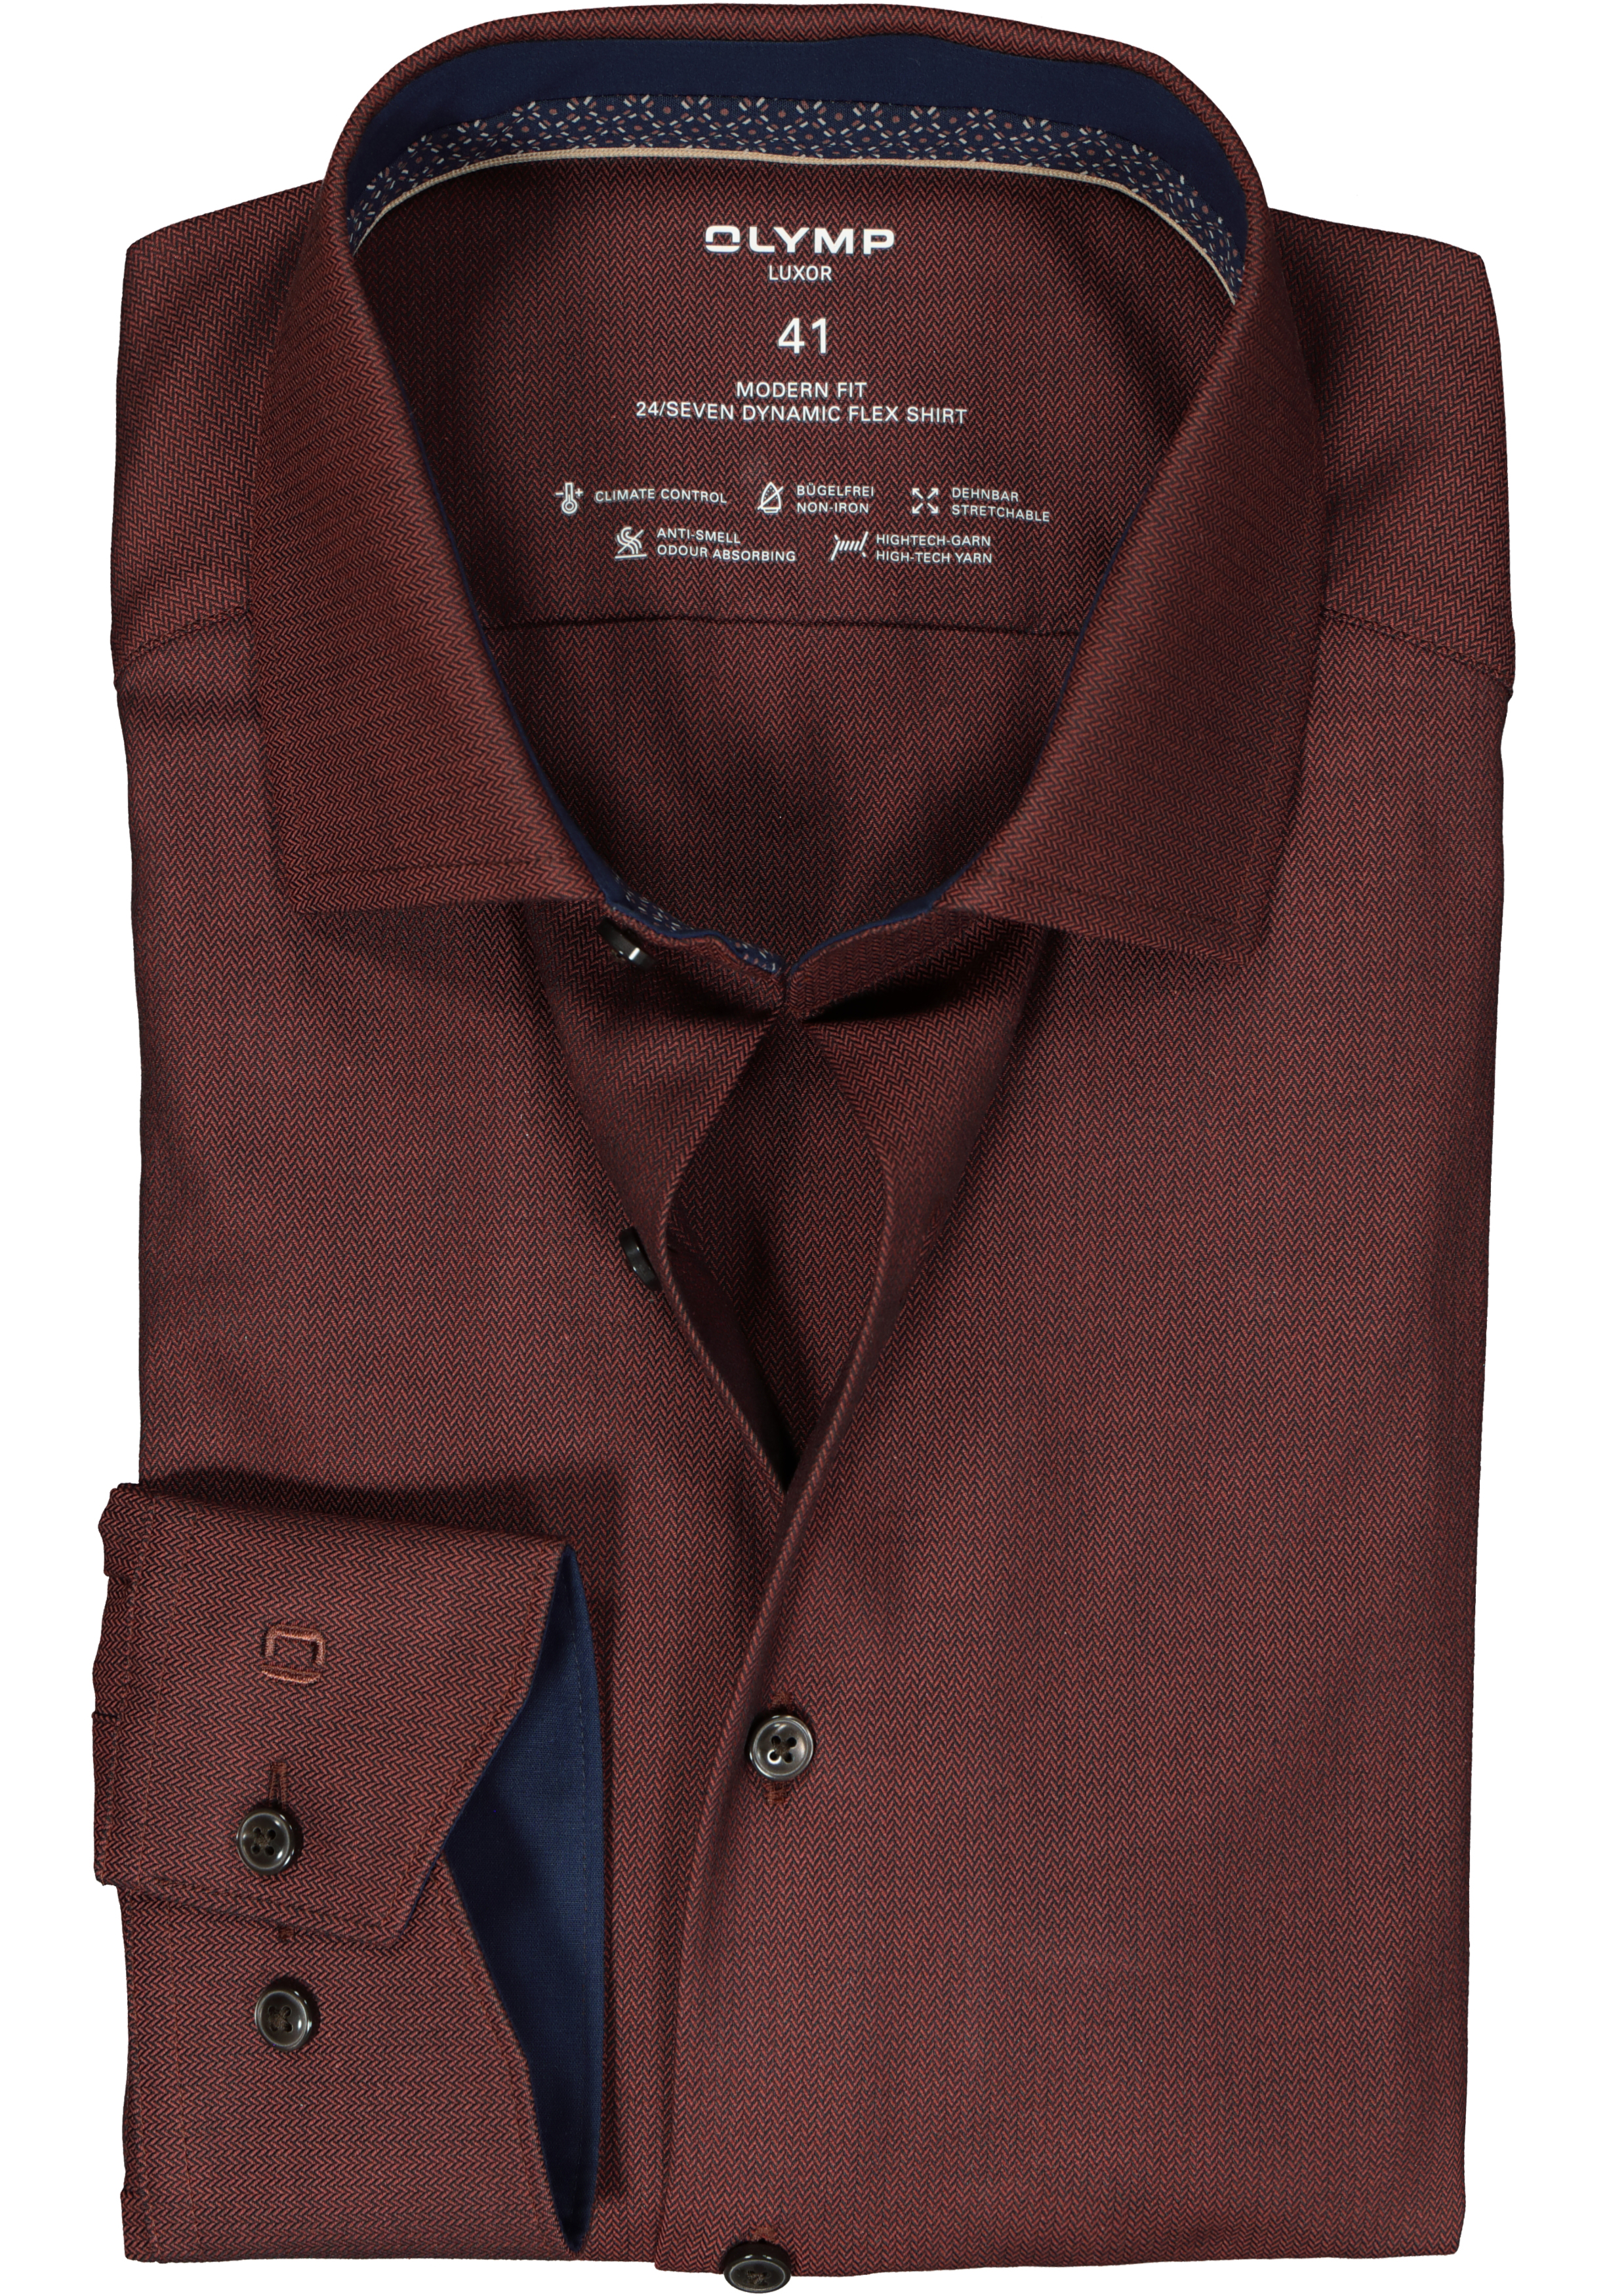 OLYMP 24/7 modern fit overhemd, herringbone, roodbruin (contrast)